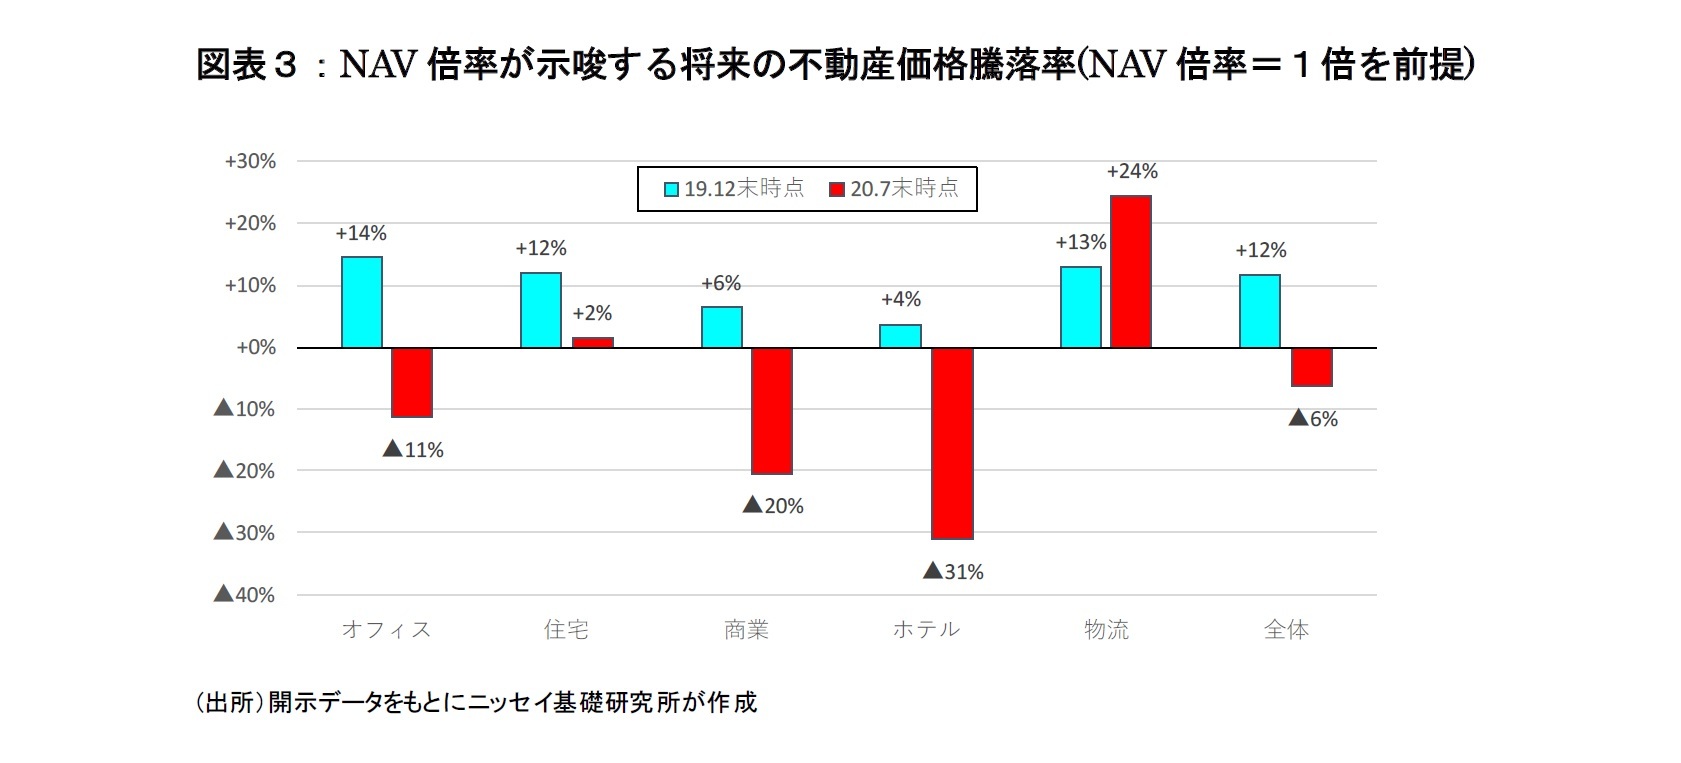 図表３：NAV倍率が示唆する将来の不動産価格騰落率(NAV倍率＝１倍を前提)